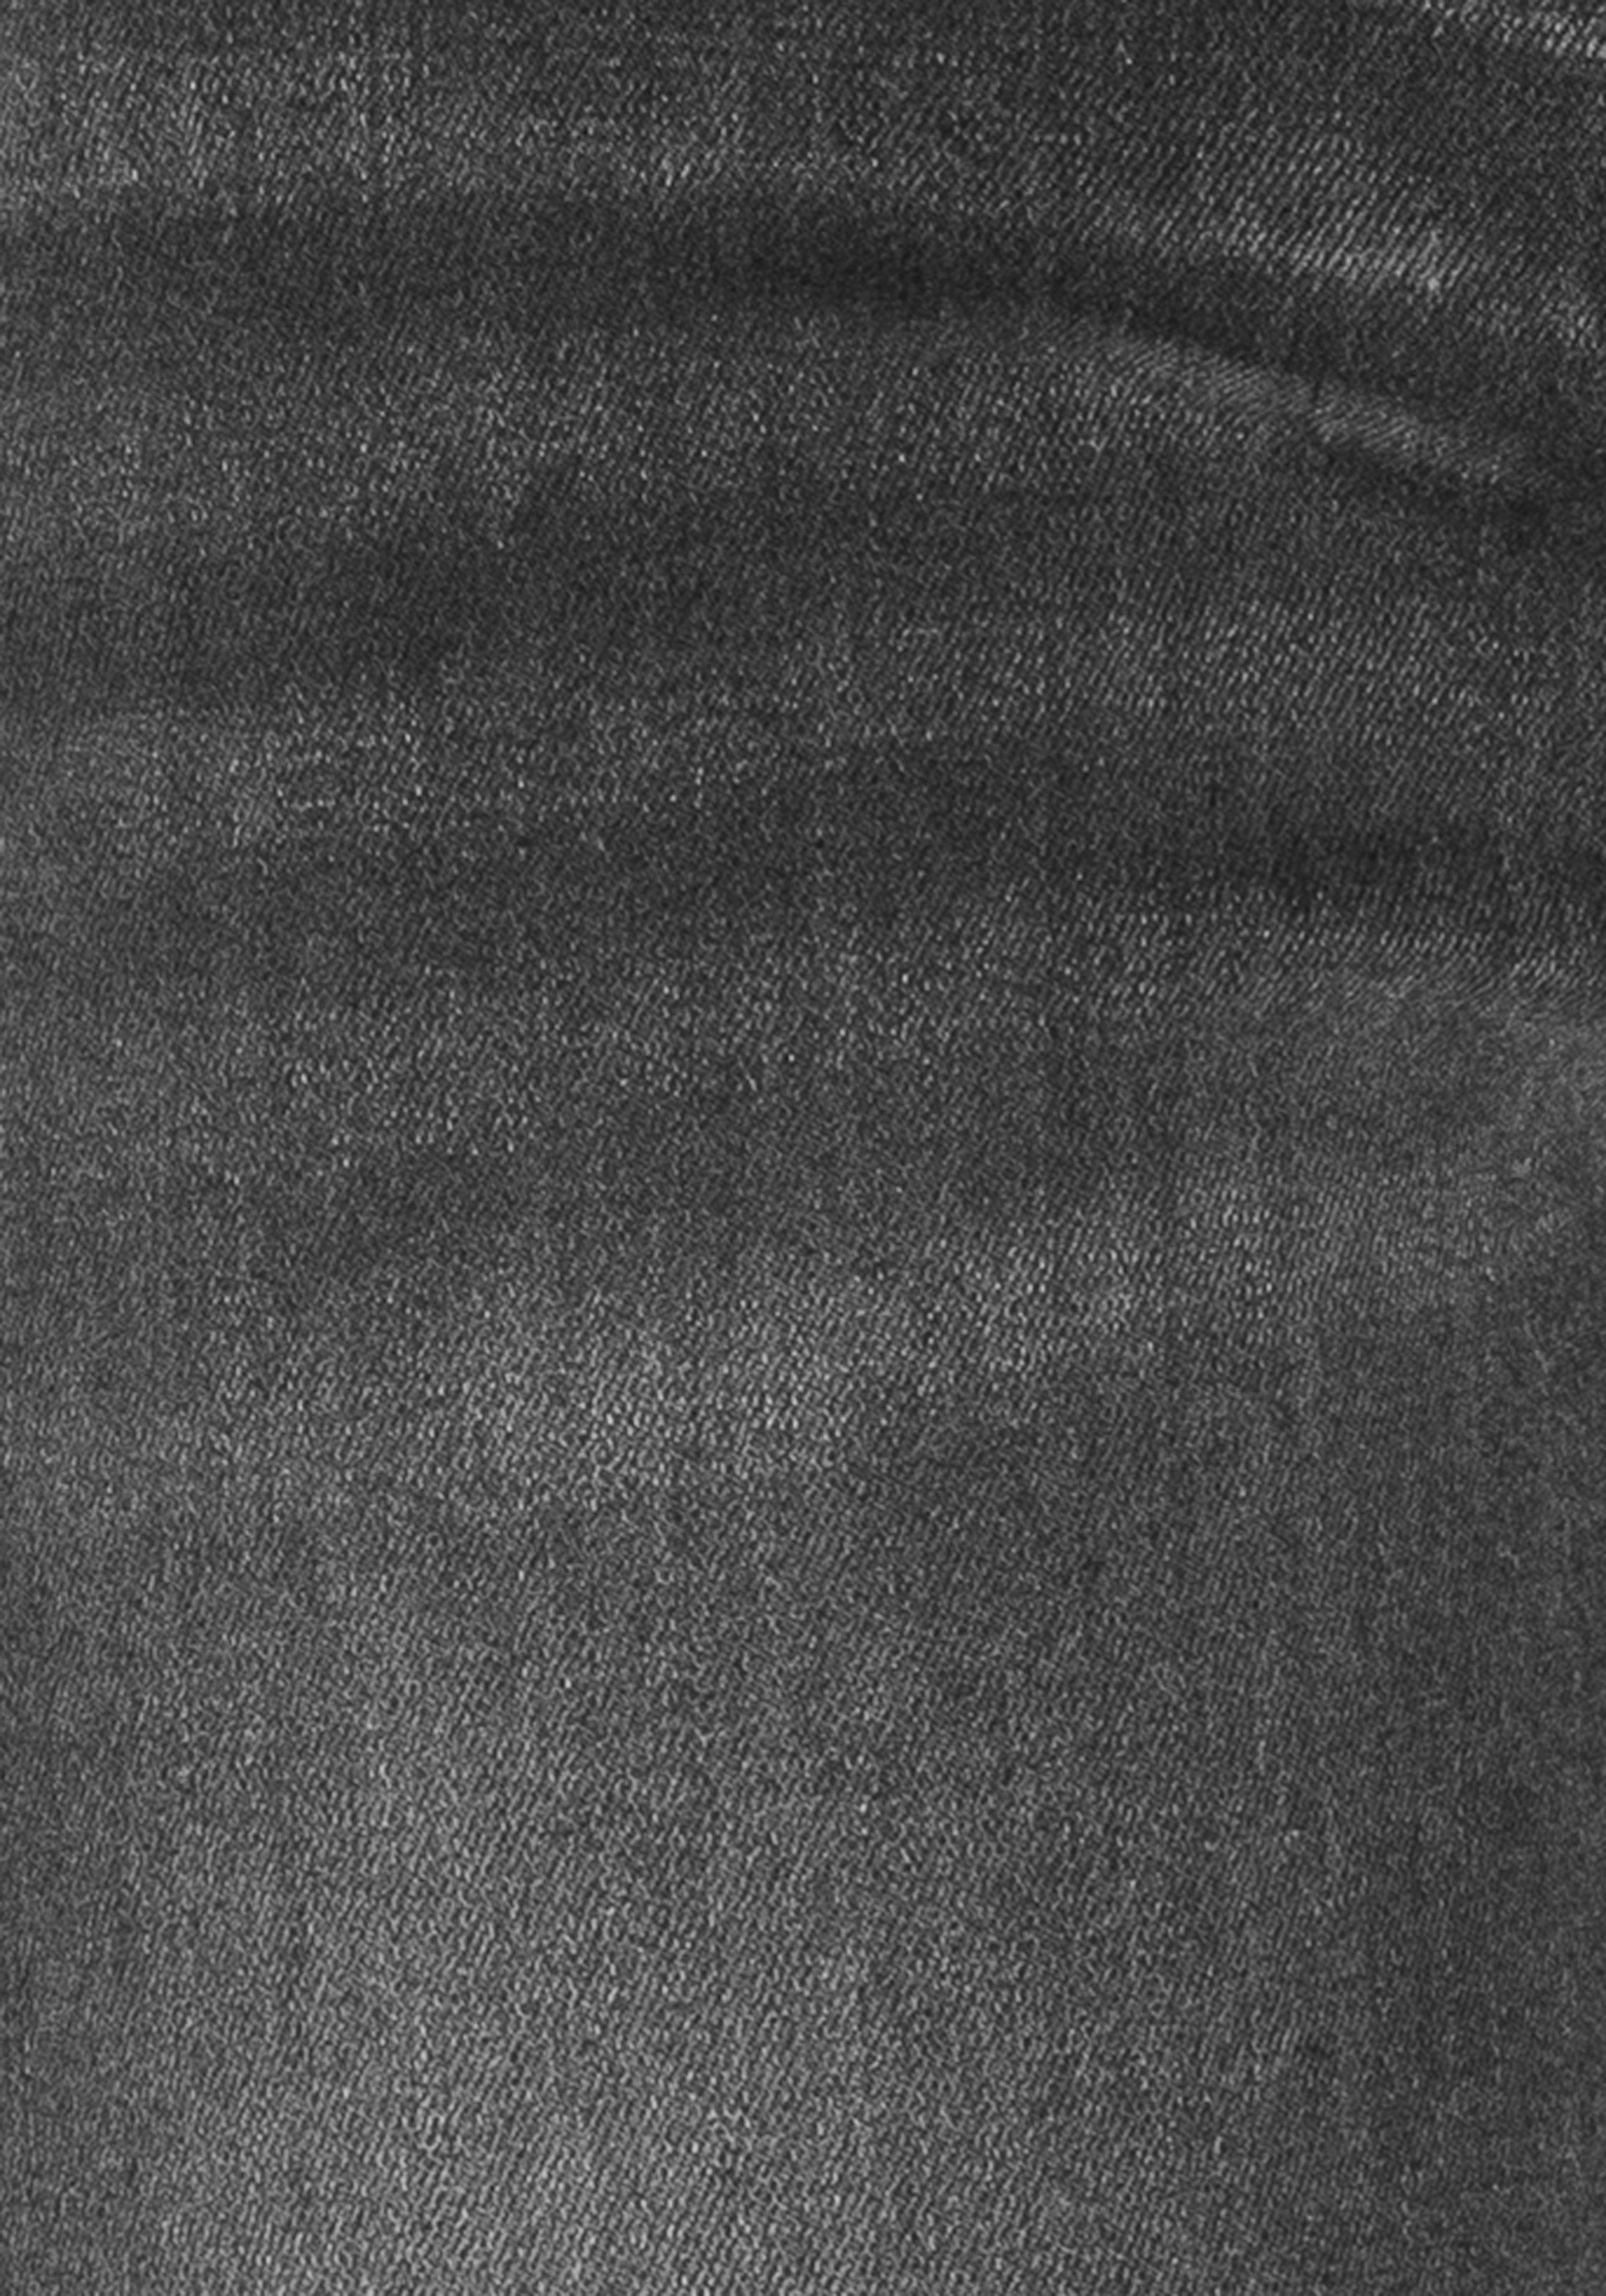 Wash Ozon Produktion grey djunaHS ökologische, 5-Pocket-Jeans dark H.I.S wassersparende durch